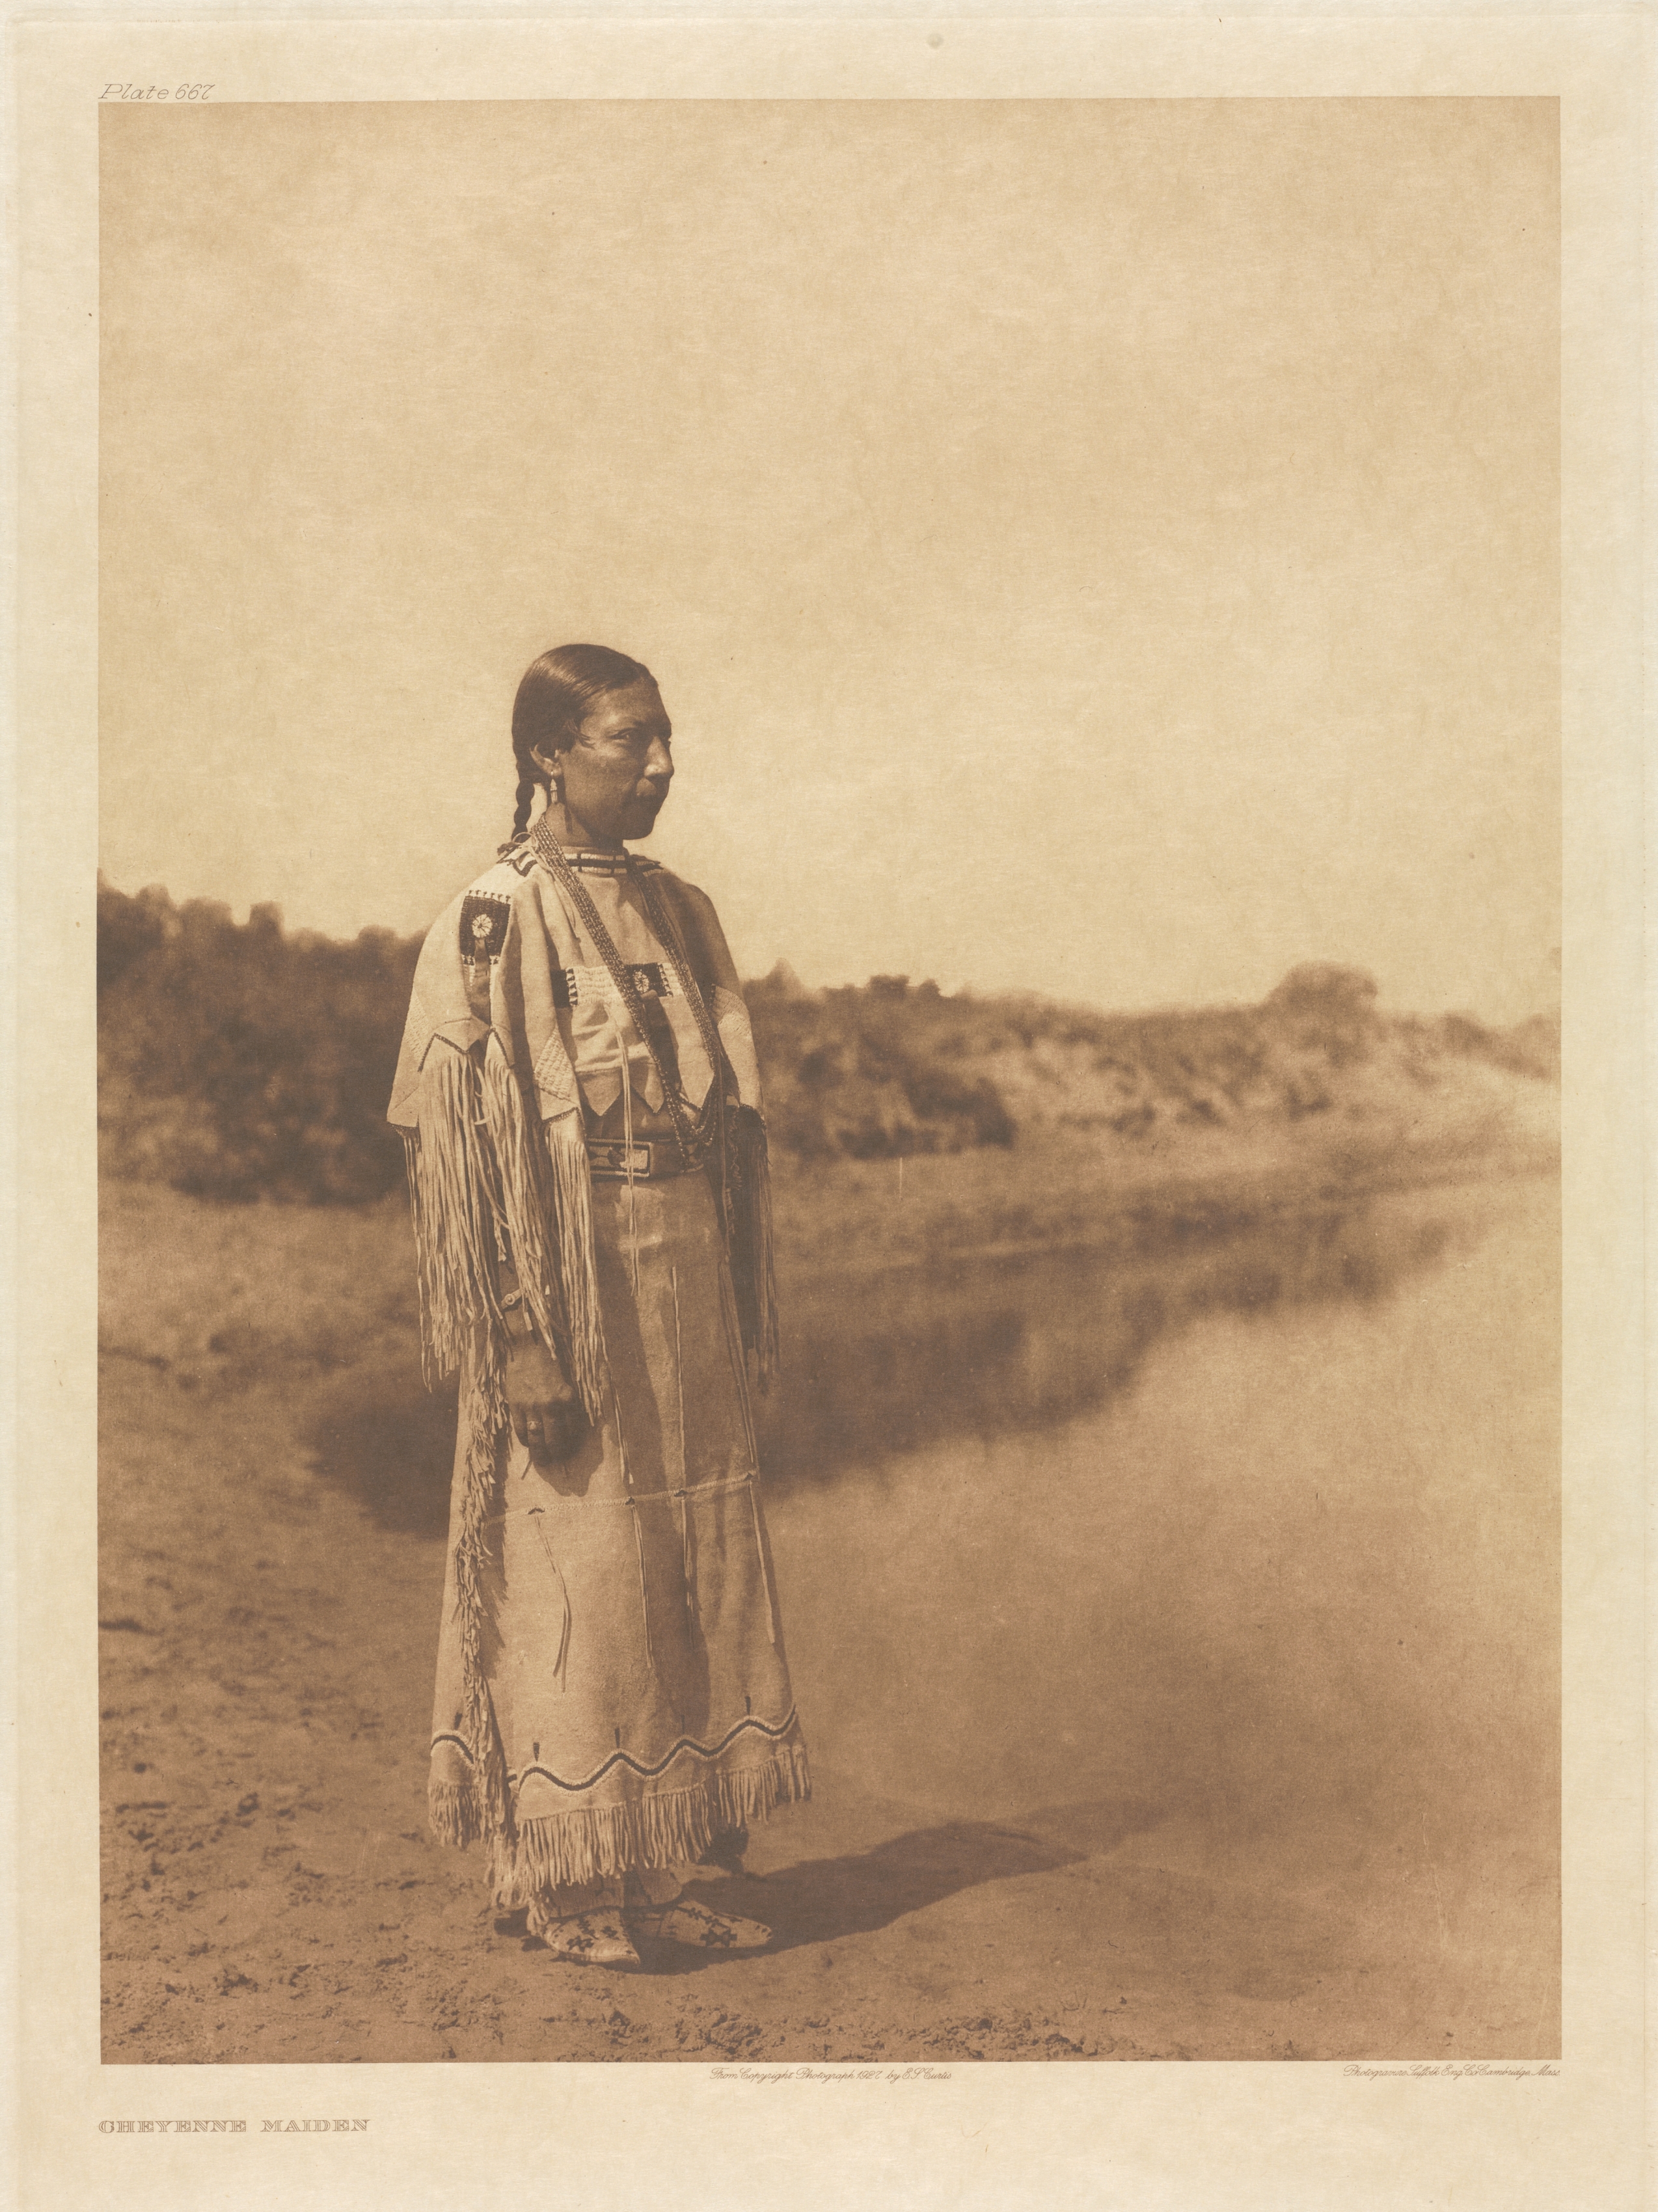 Portfolio XIX, Plate 667: Cheyenne Maiden